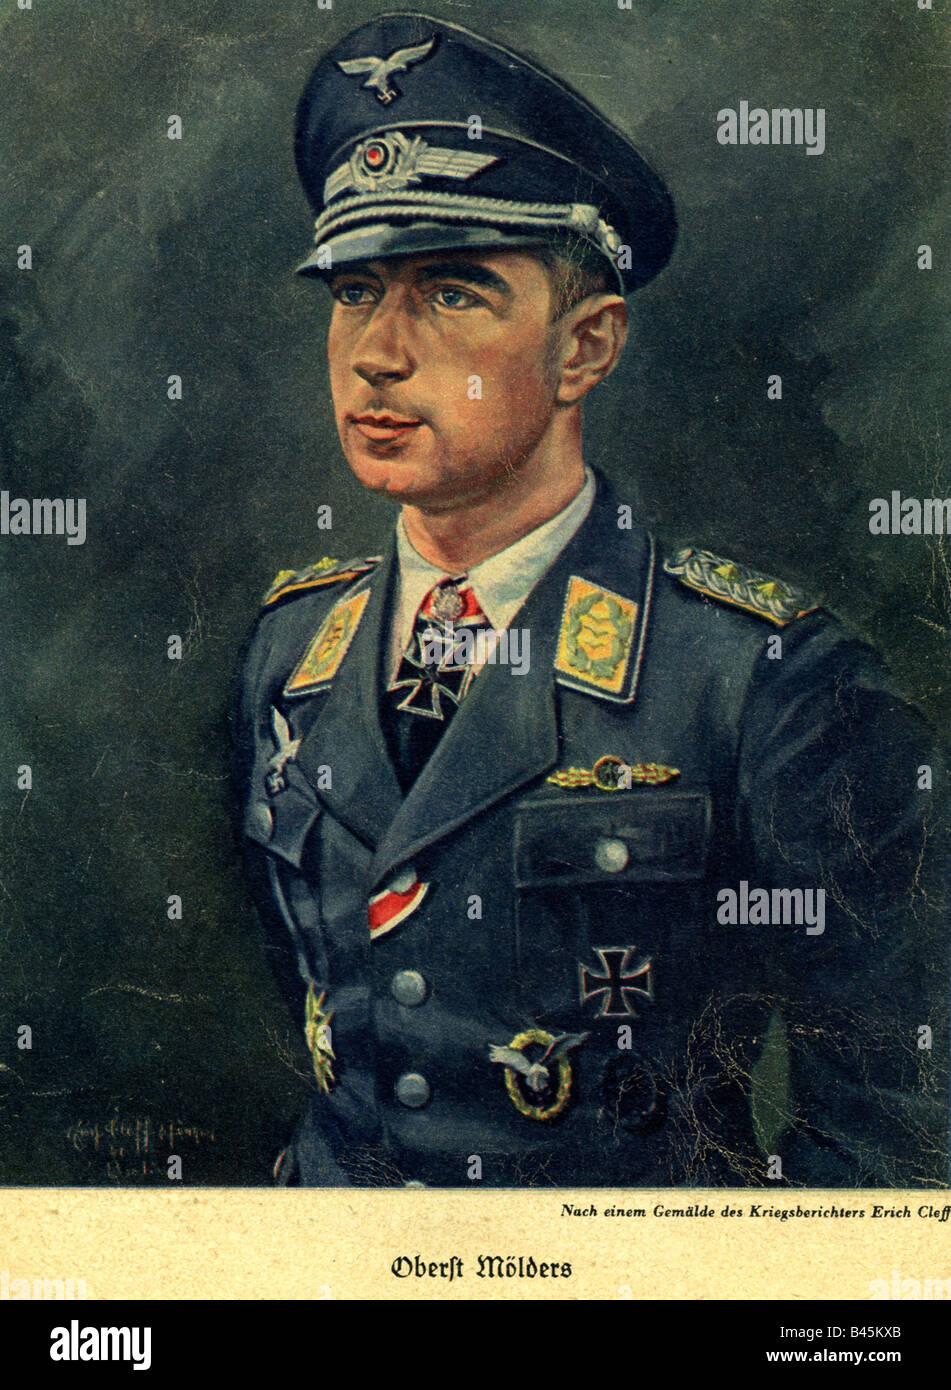 Mölders, Werner, 18.3.1913 - 22.11.1941, deutscher Flieger, Kommodore des 51. Kampfflügels, nach dem Gemälde von Erich Cleff, 1941, Stockfoto